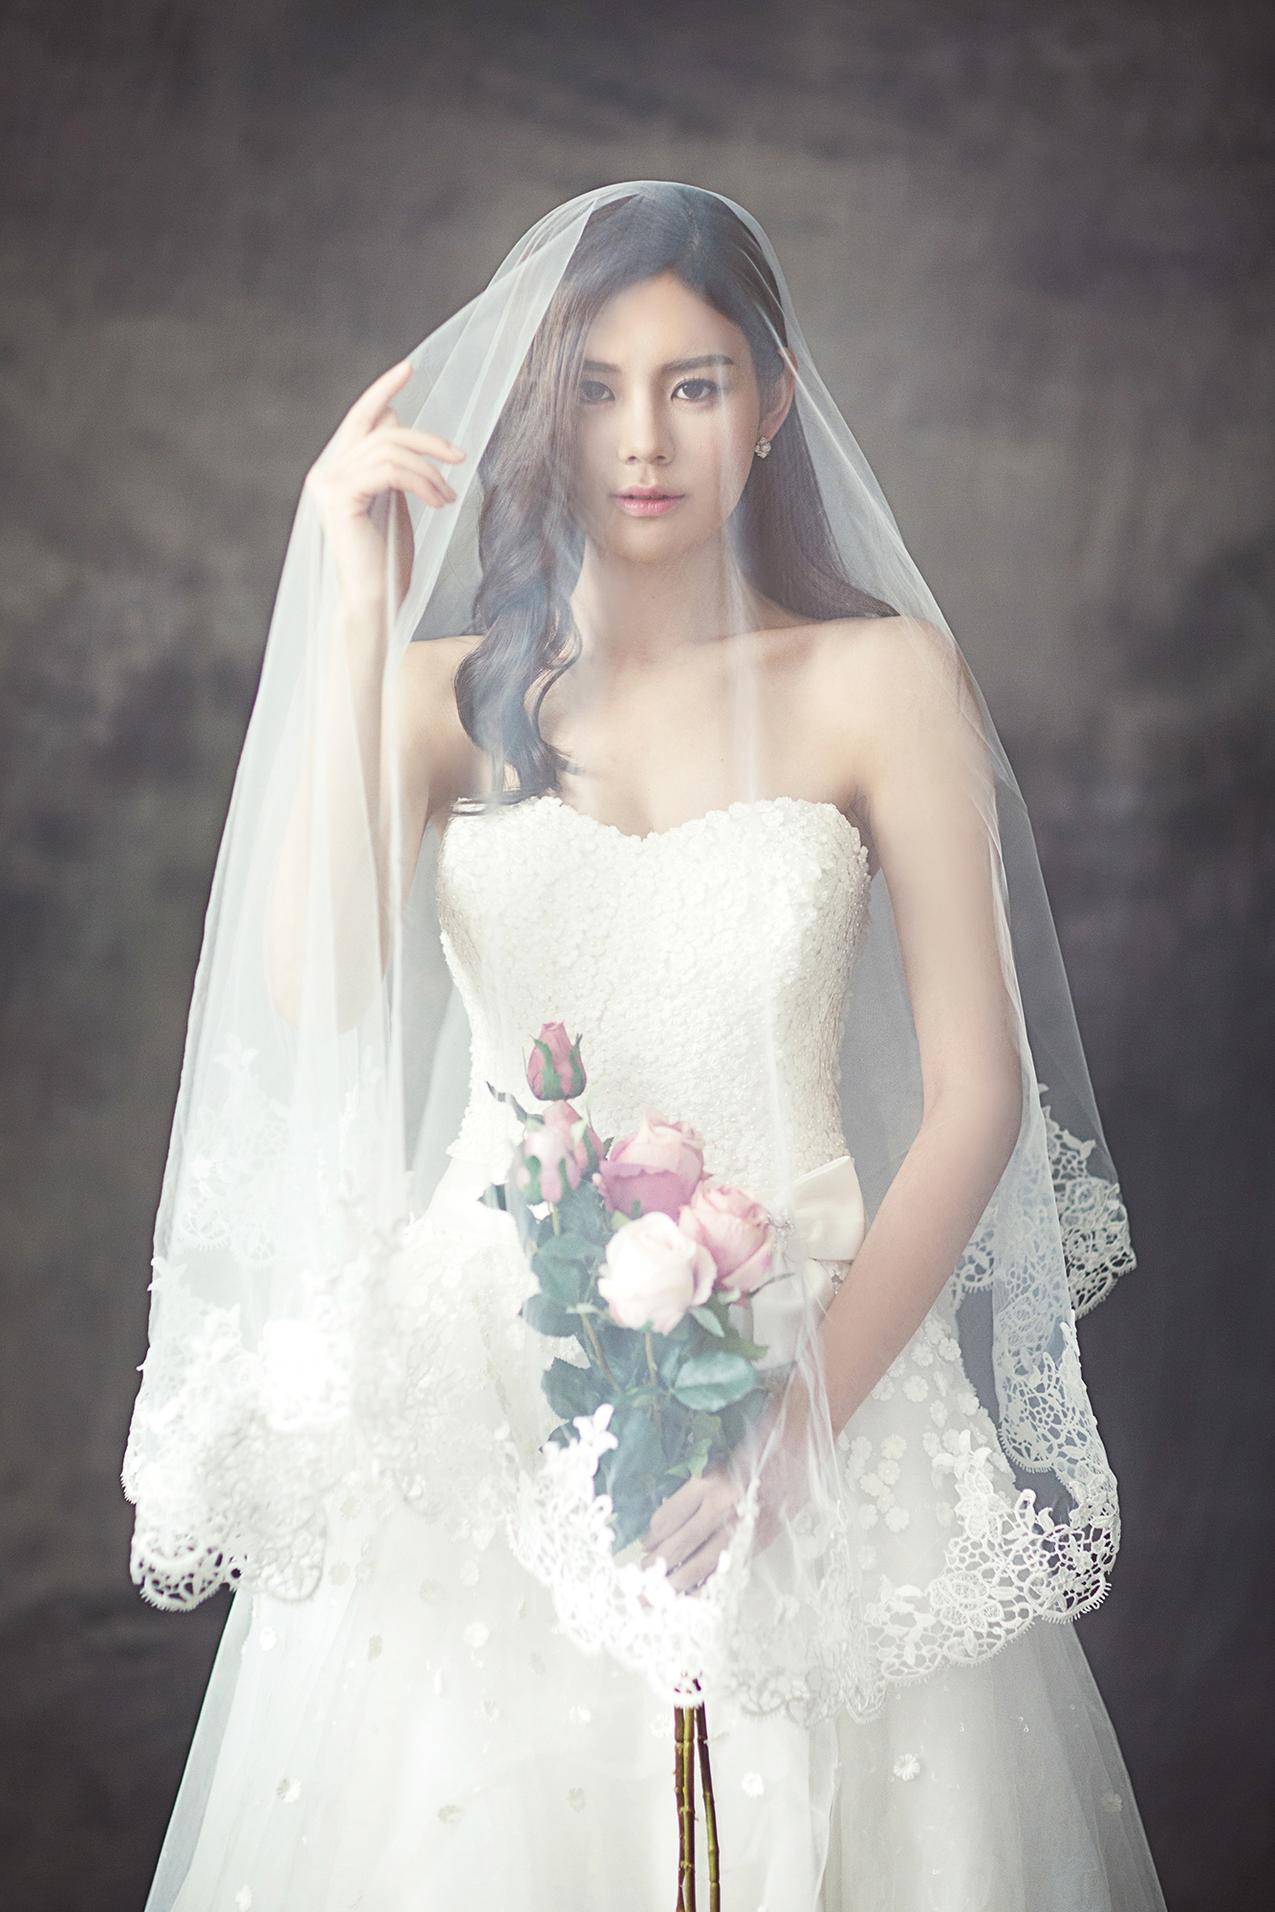 穿着白面纱的玫瑰花束婚纱